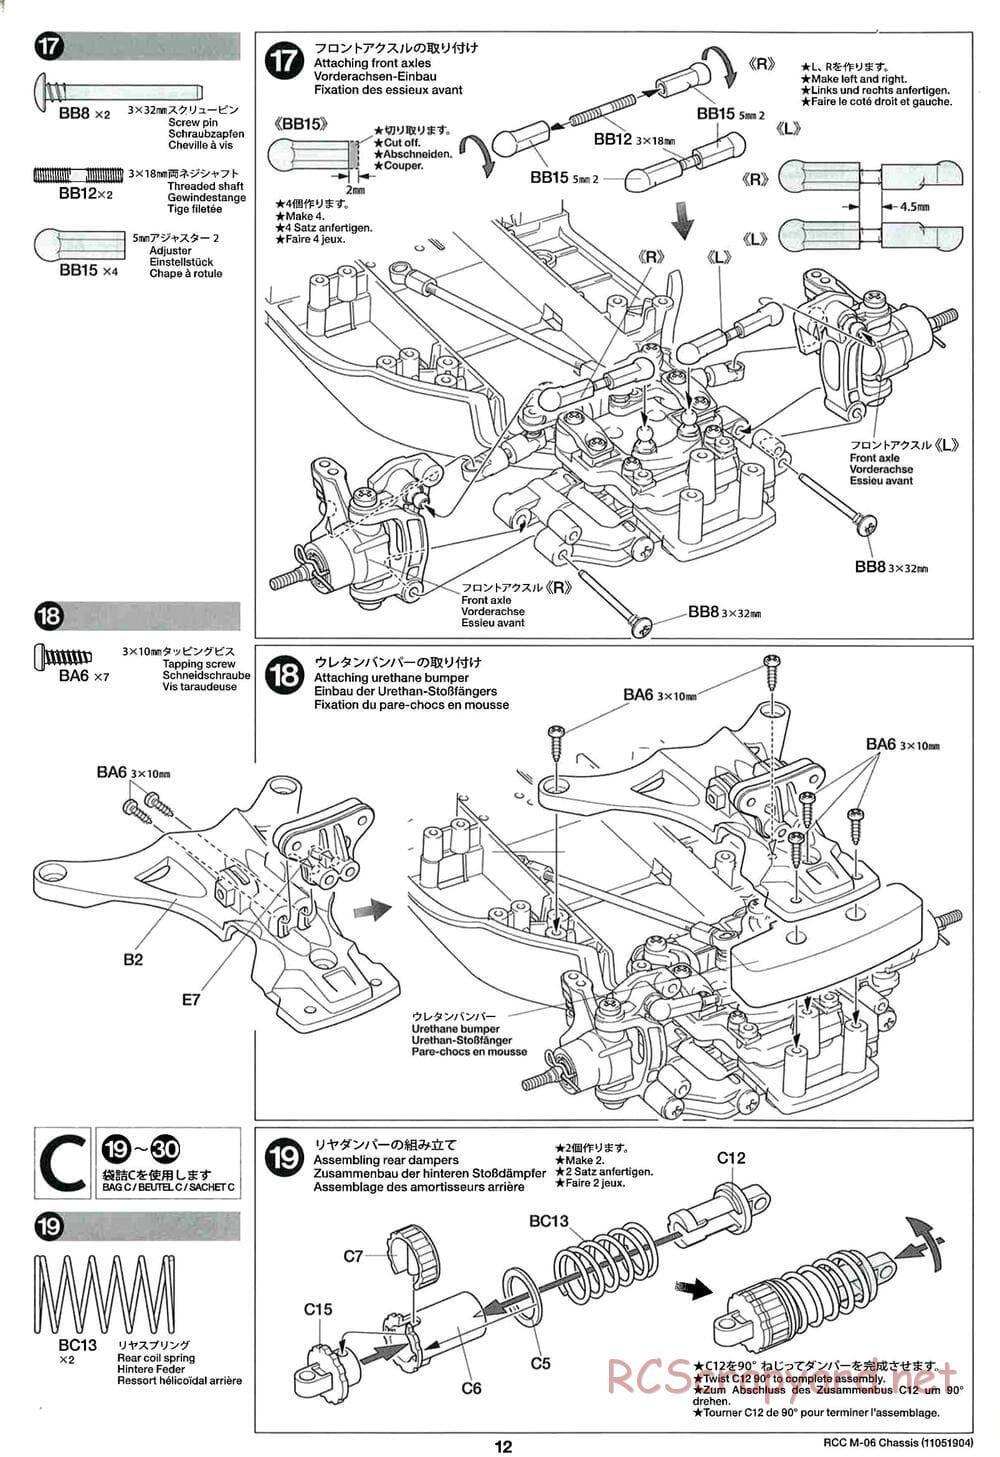 Tamiya - M-06 Chassis - Manual - Page 12